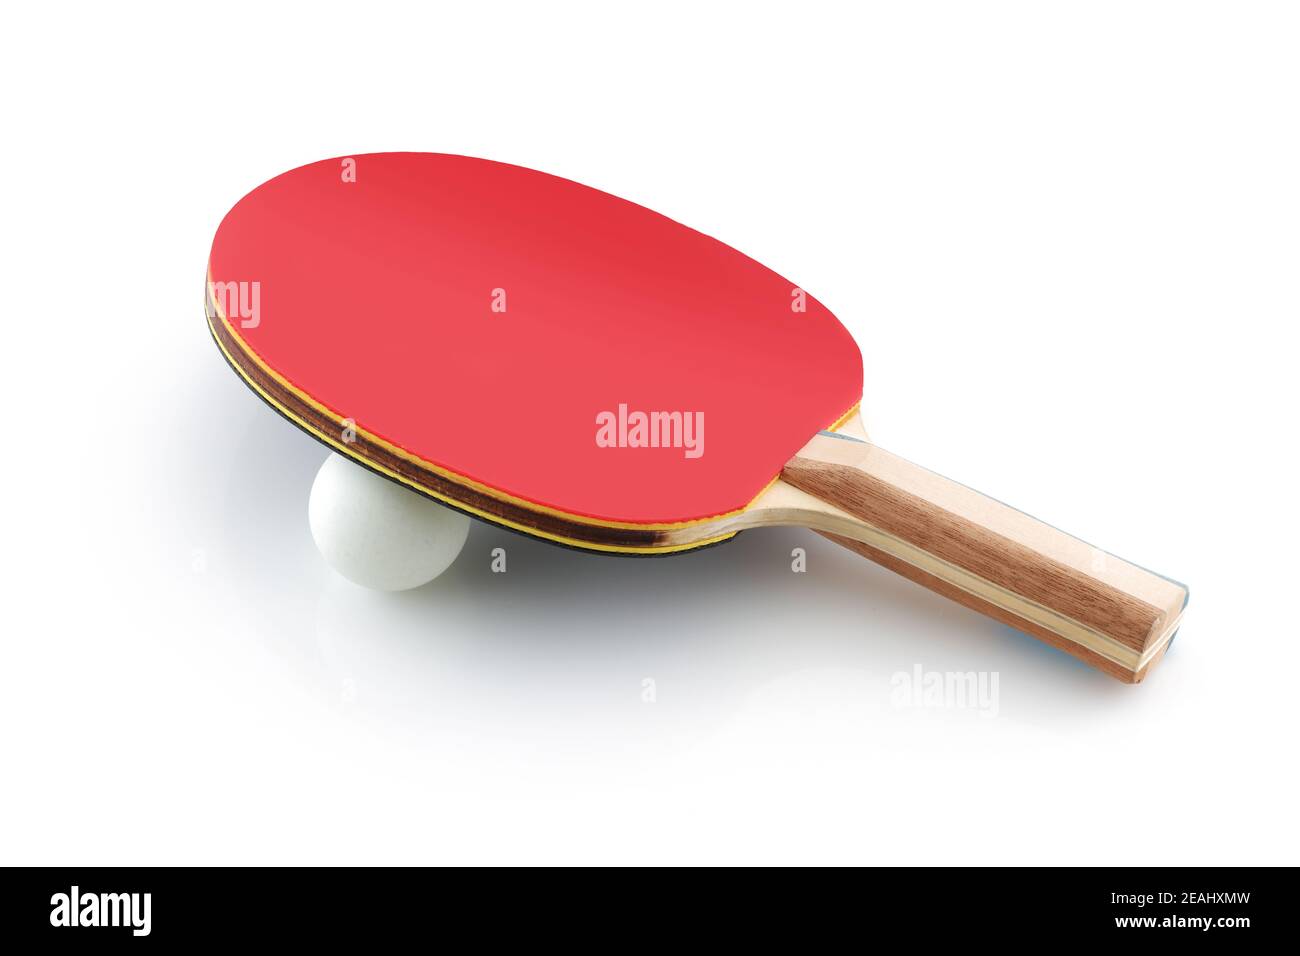 Tenis de mesa paleta de ping pong con pelota en blanco Foto de stock